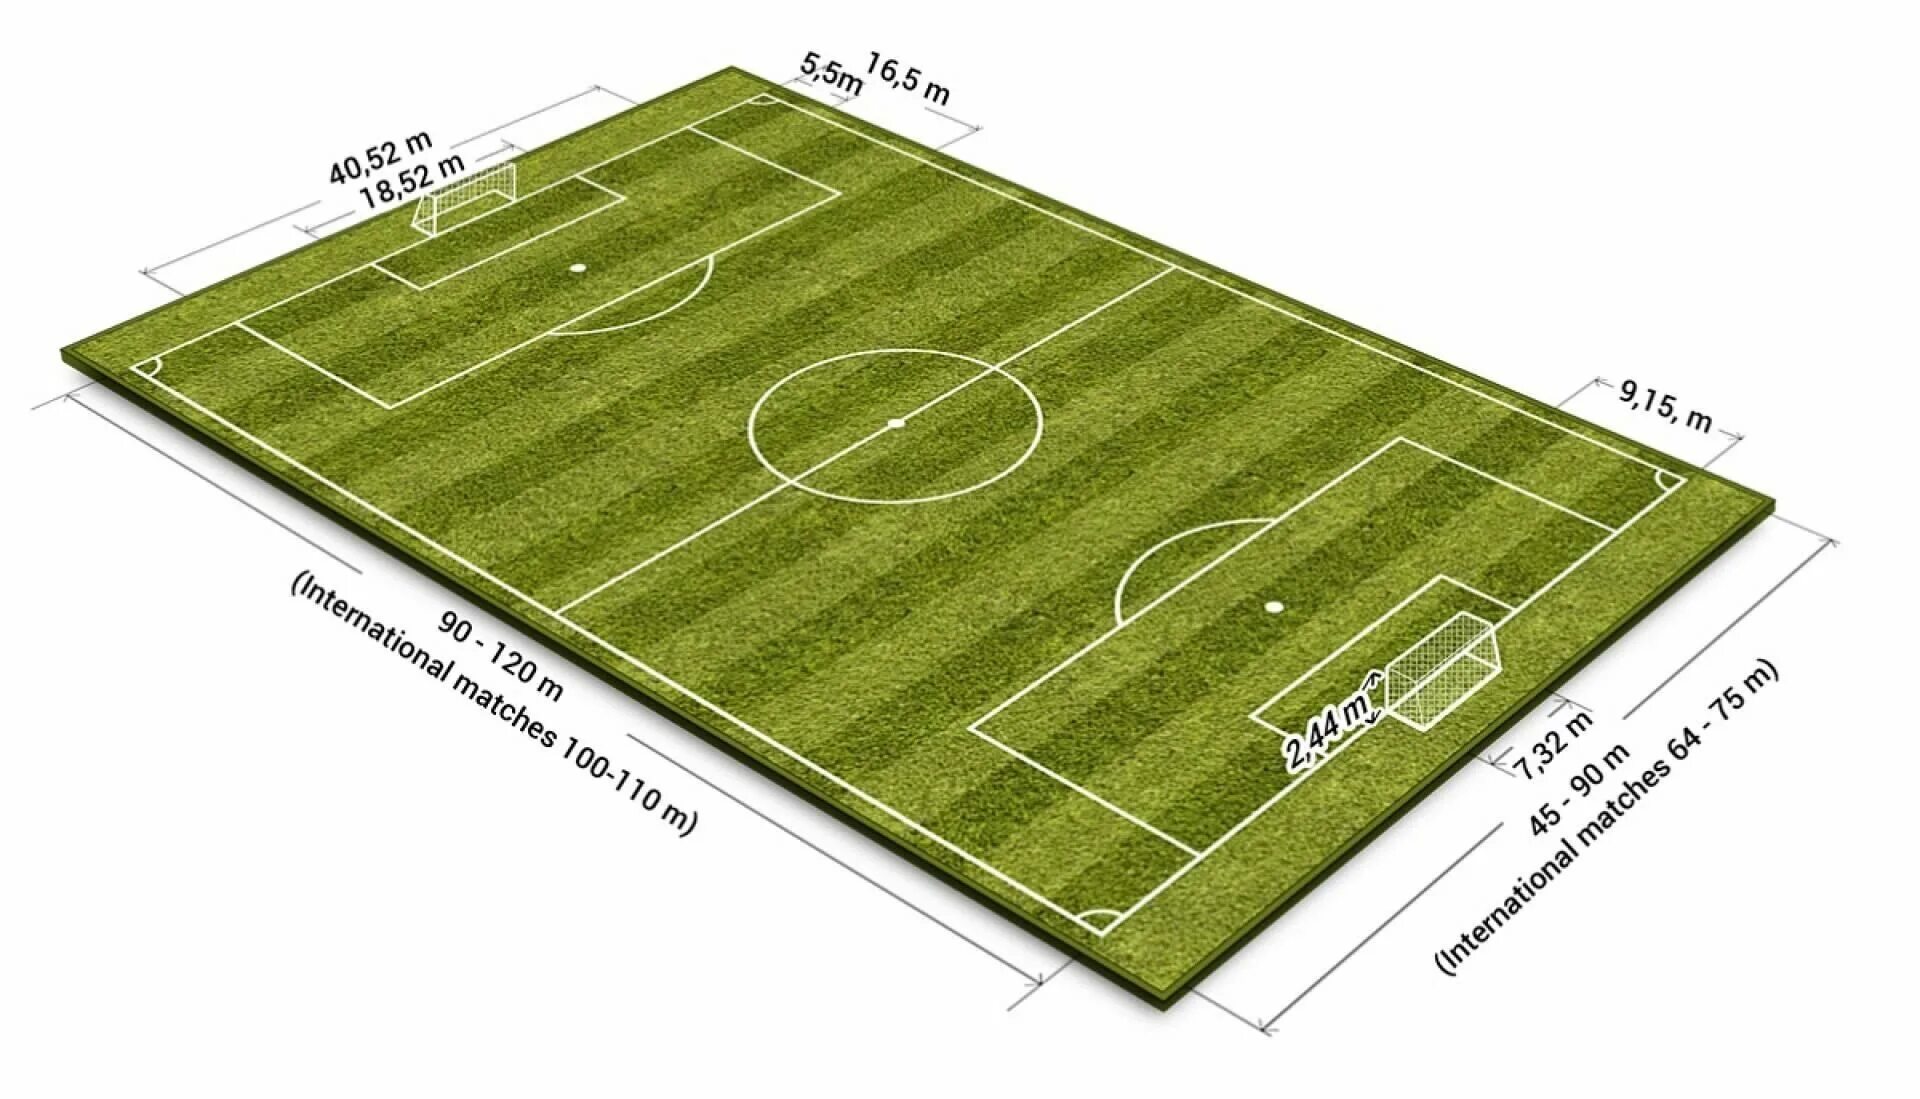 Длина поля 130 метров ширина 70. Площадь футбольного поля м2 стандарт. Разметка футбольного поля 68х105. Стандарт футбольного поля ФИФА. Размер футбольного поля FIFA.